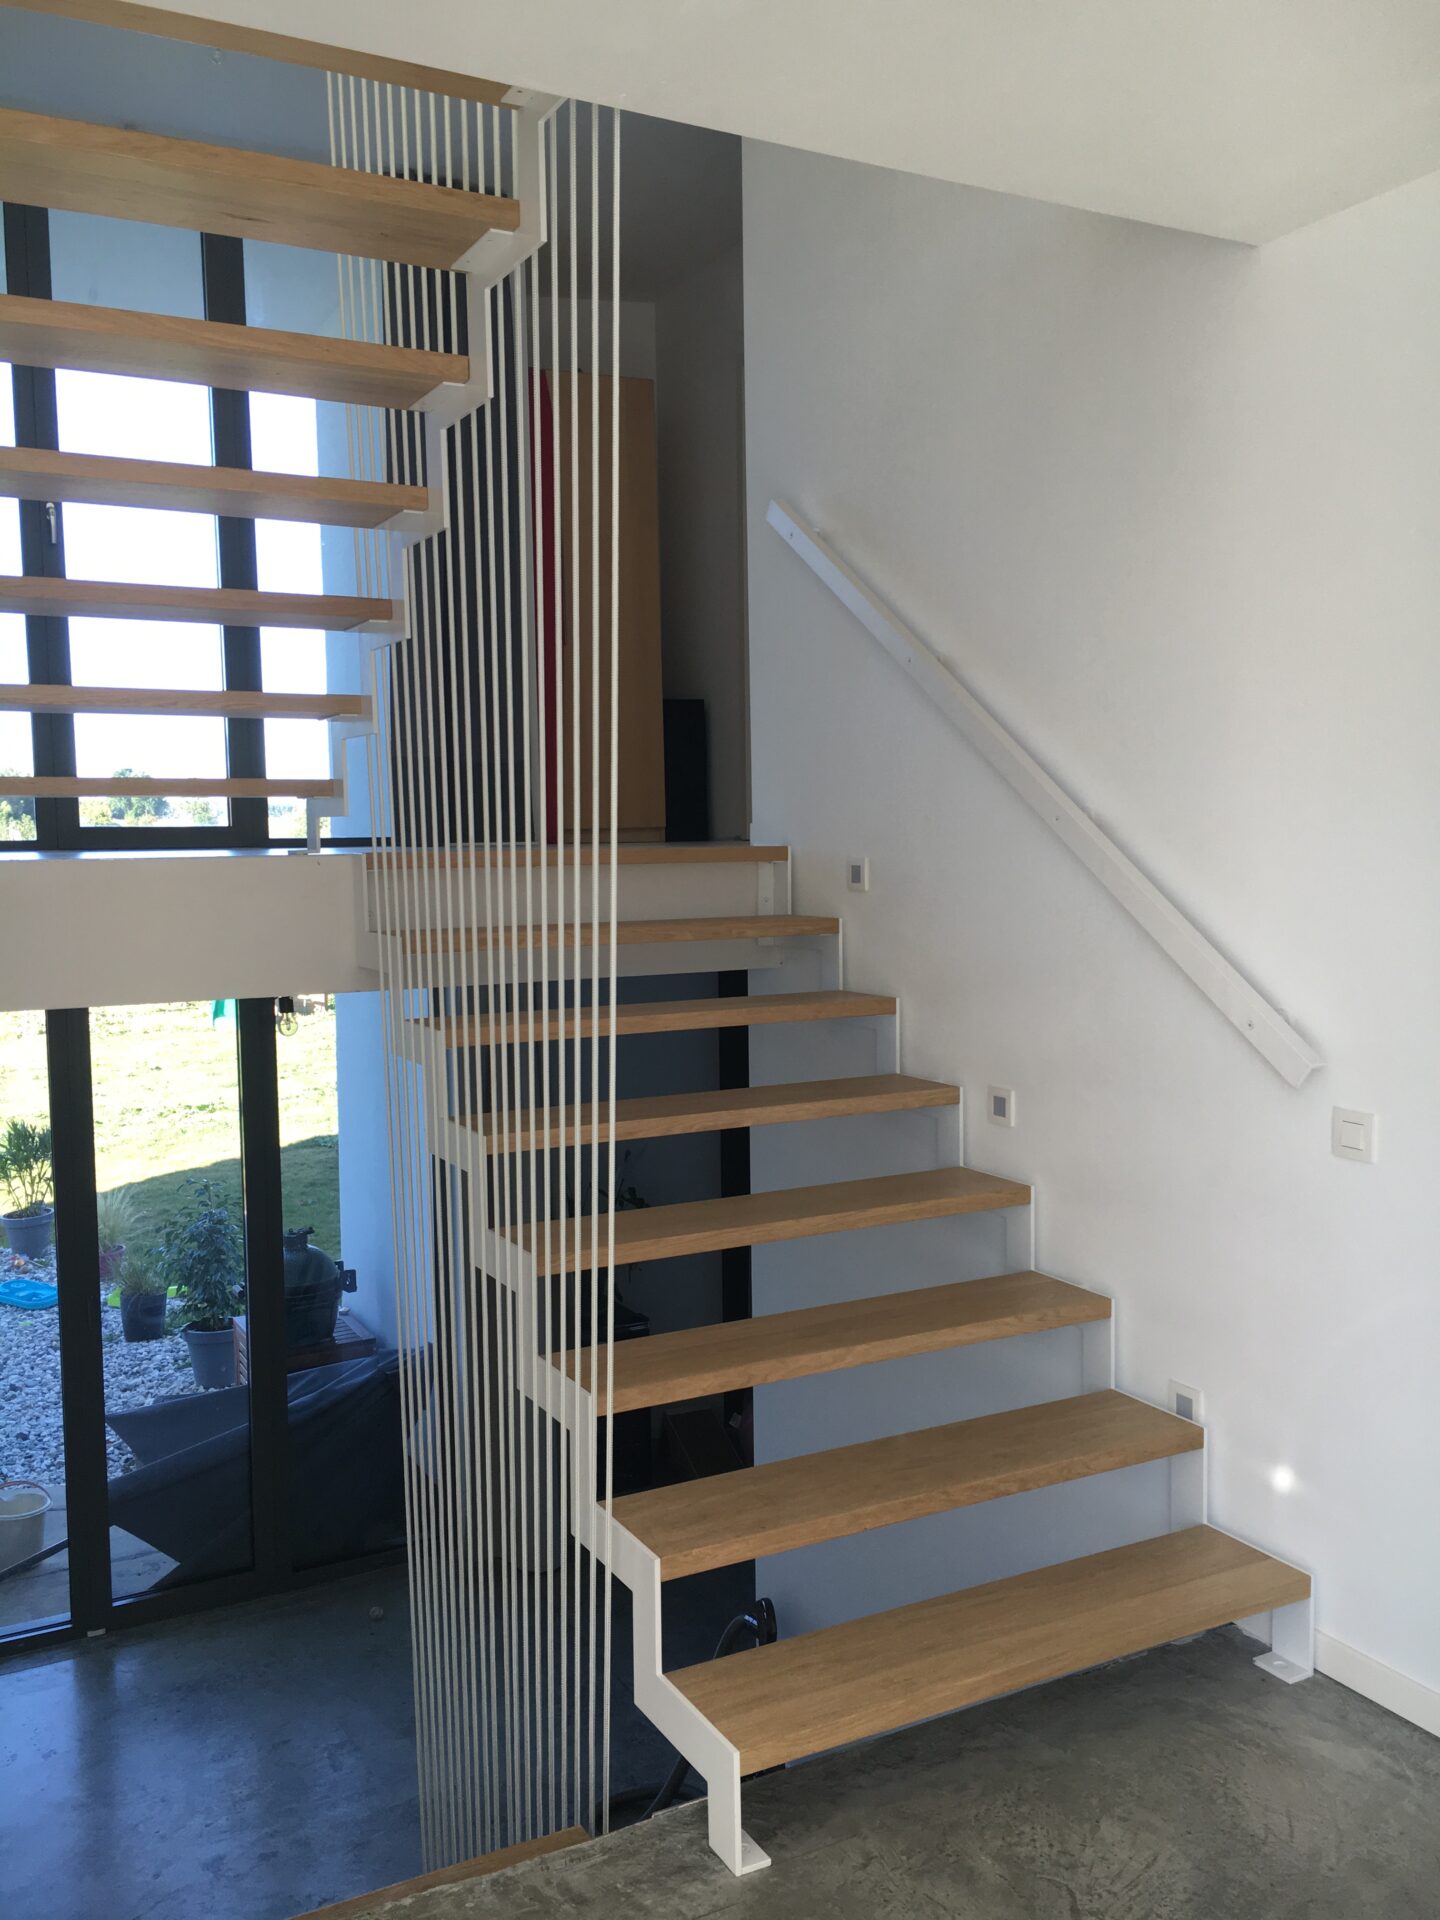 Maison Engels escalier sur 3 niveaux acier laqué blanc chêne balustrade corde